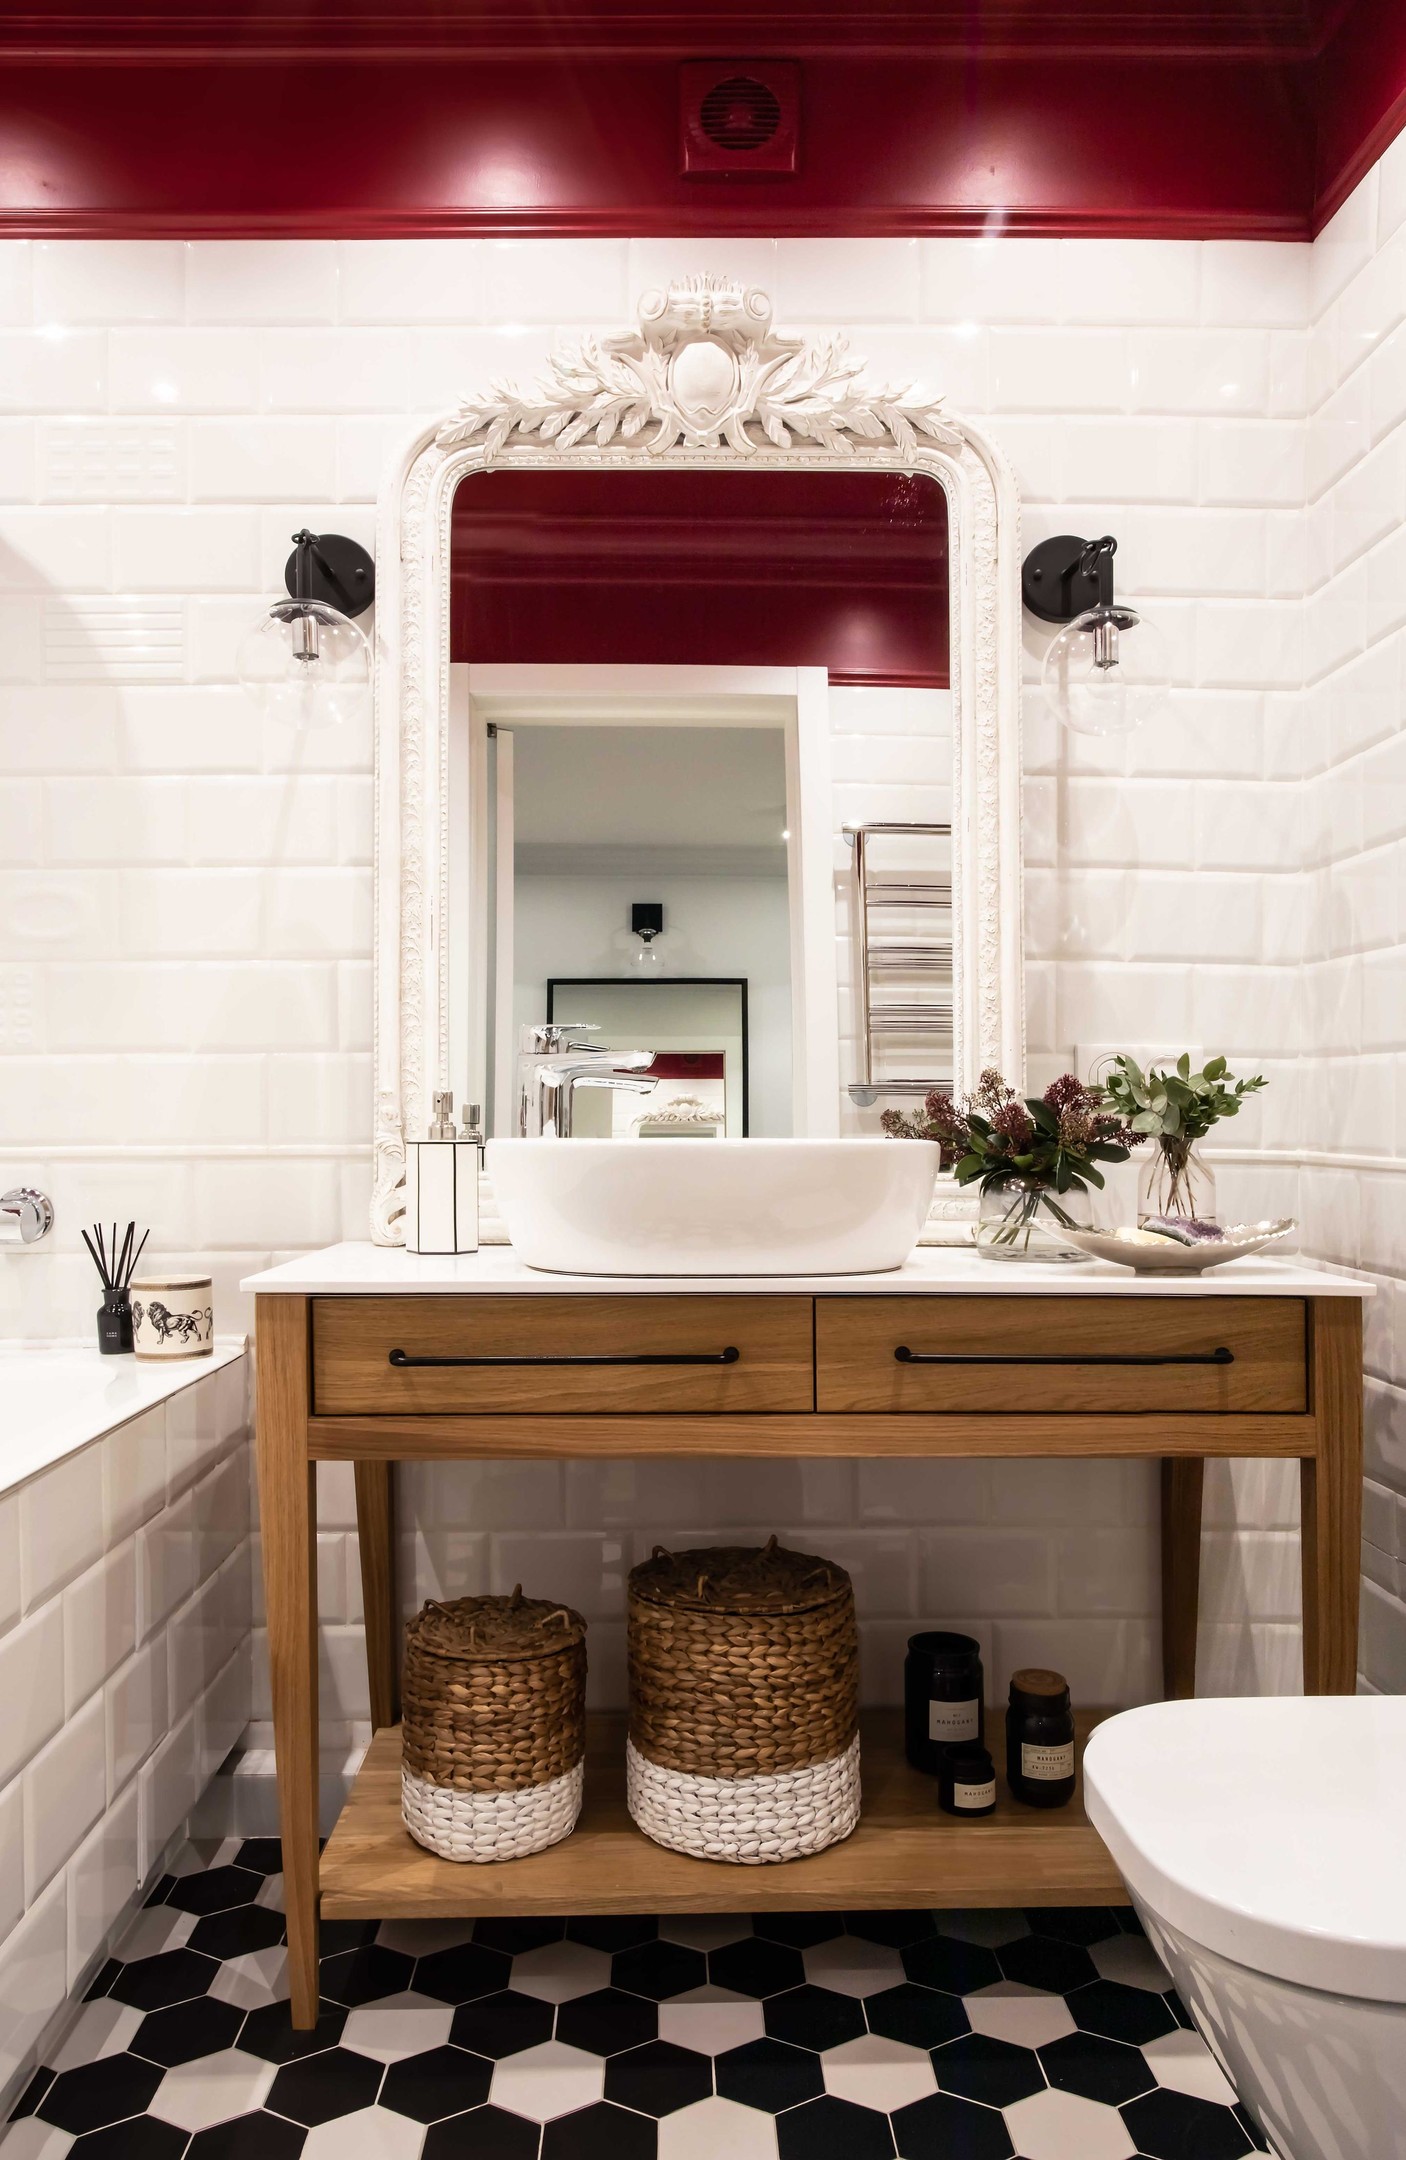 Riêng phòng tắm được thiết kế cầu kỳ, tỉ mỉ đến từng chi tiết, kết hợp gam màu trắng tươi sáng và đỏ quyến rũ để làm toát lên vẻ sang trọng mà cô chủ yêu thích.